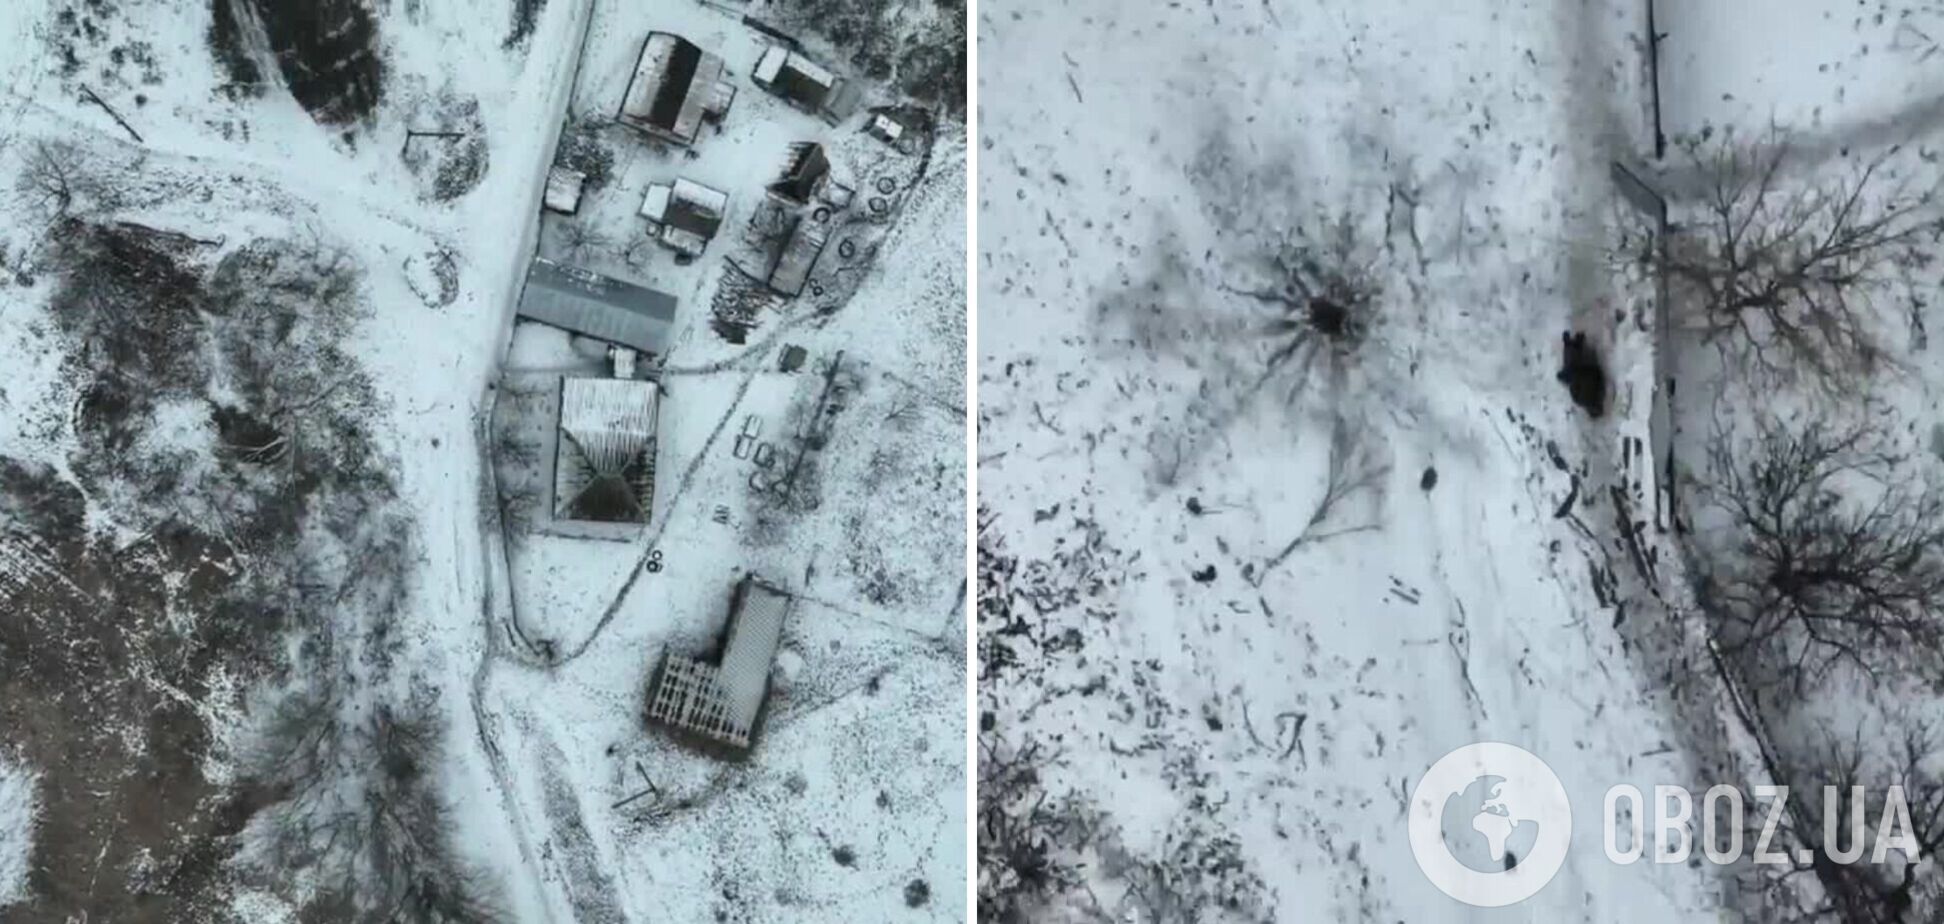 'Своих не бросают'? Украинские аэроразведчики показали, как оккупант убежал после 'привета' от дрона. Видео